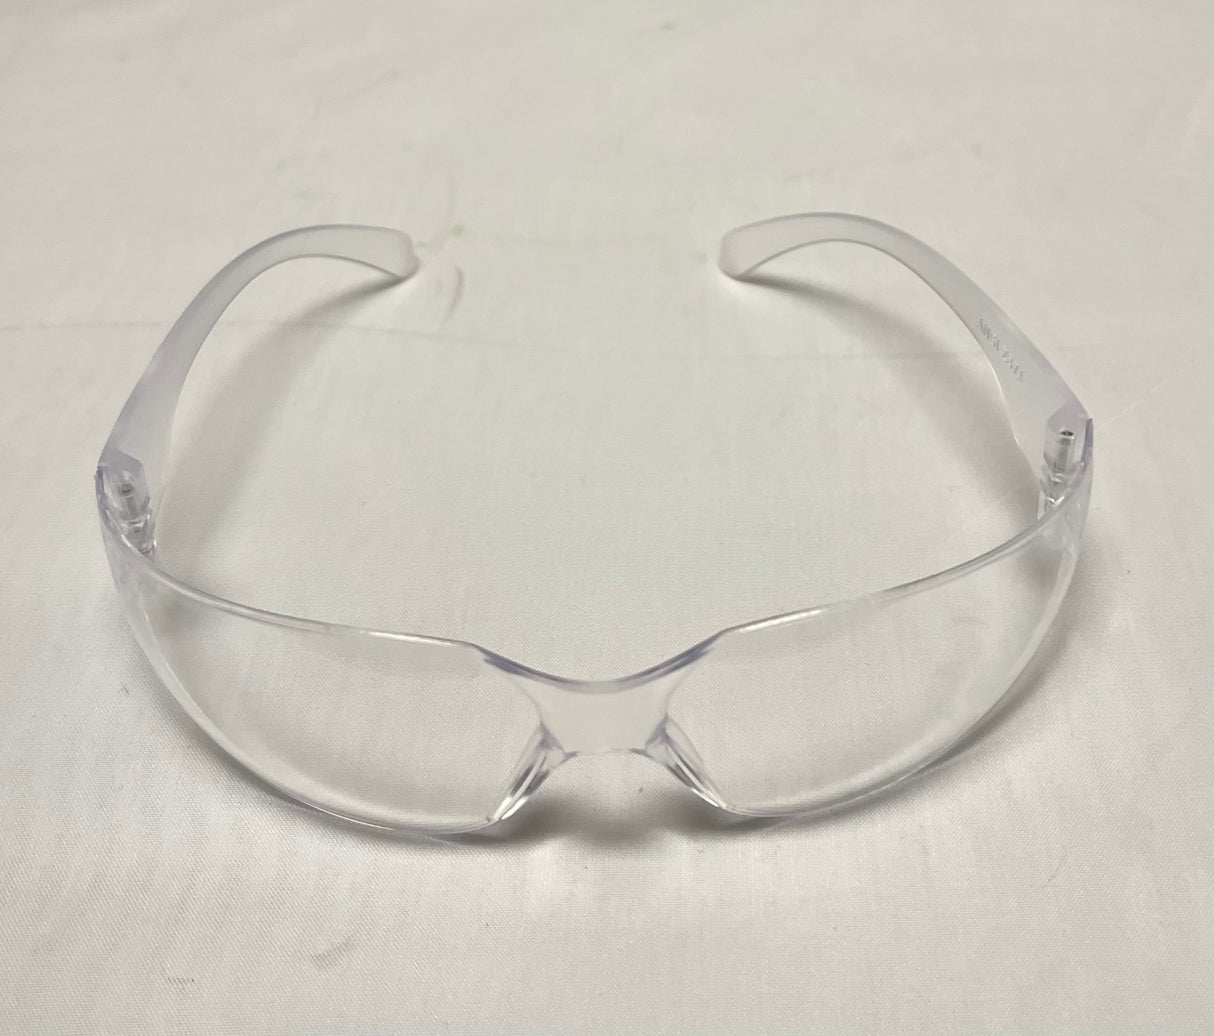 Gafas de seguridad ClearView seguras para láser Co2